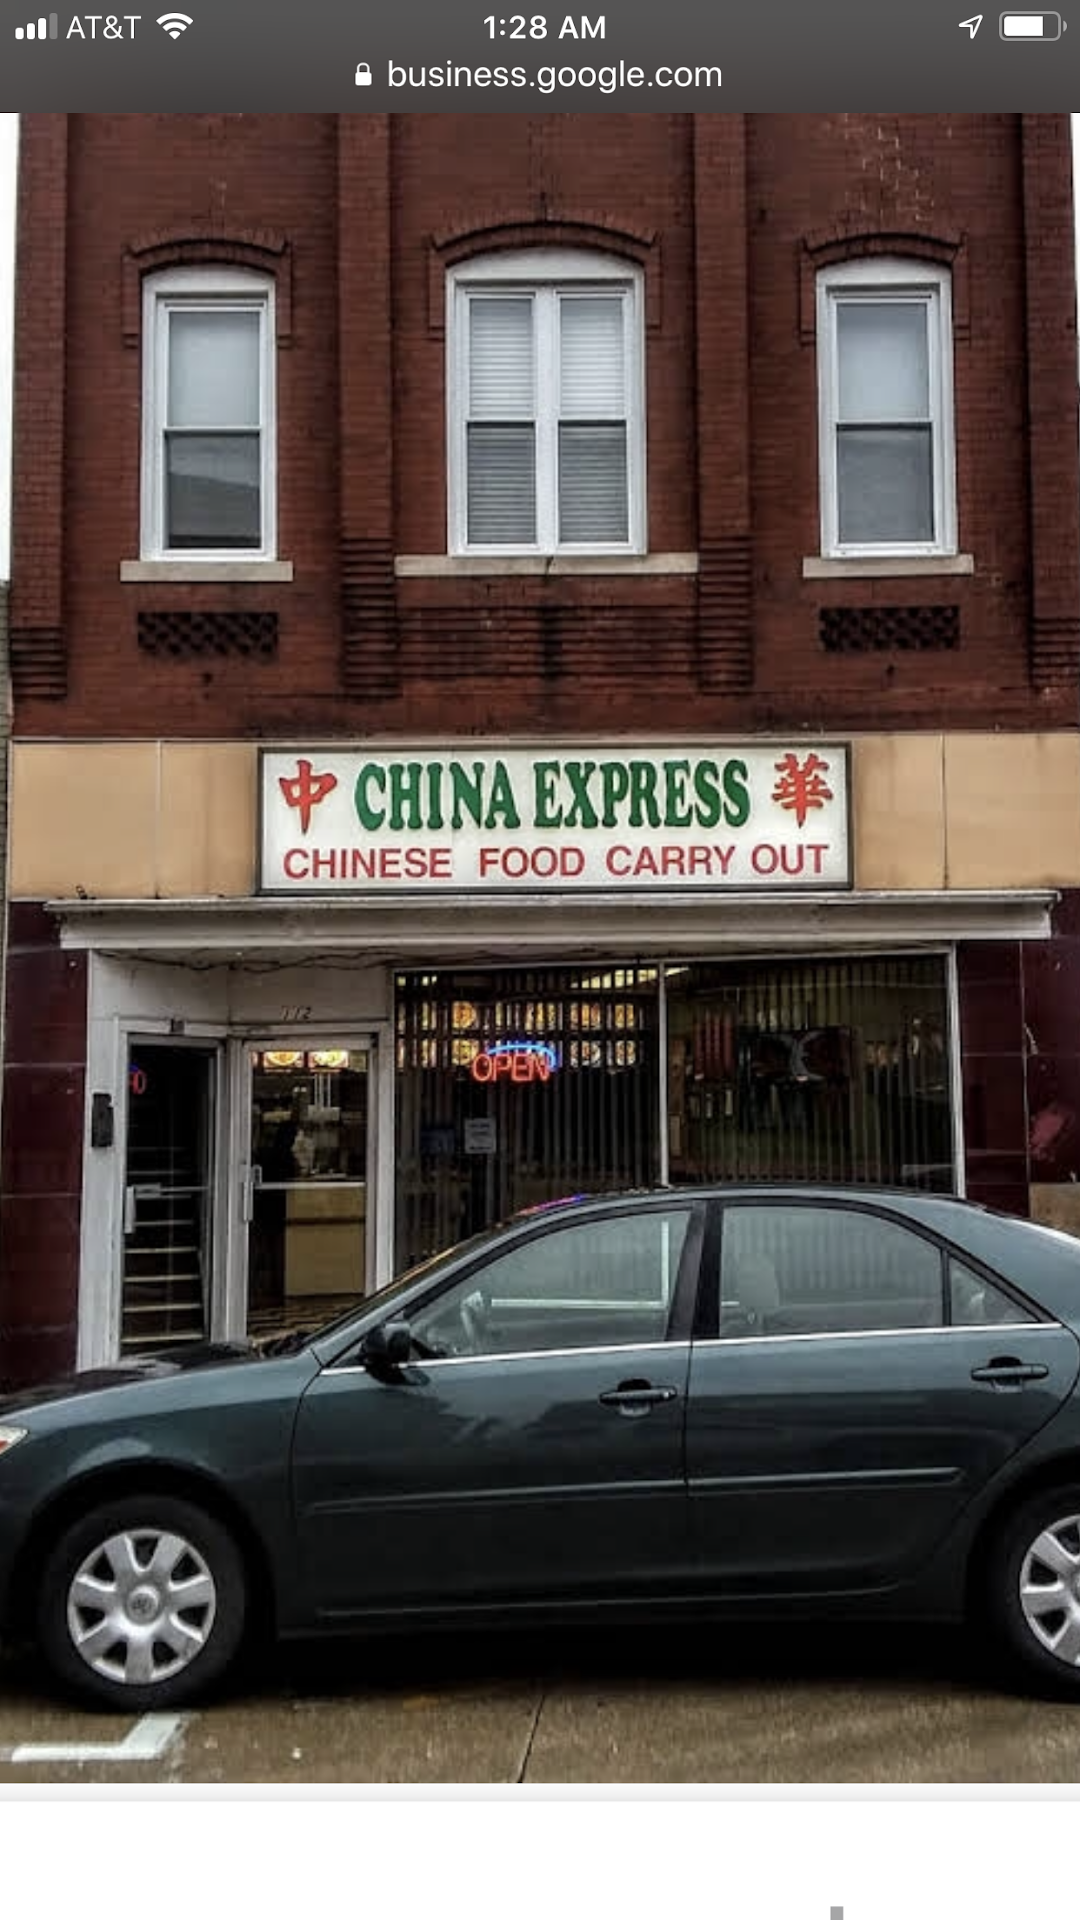 China Express